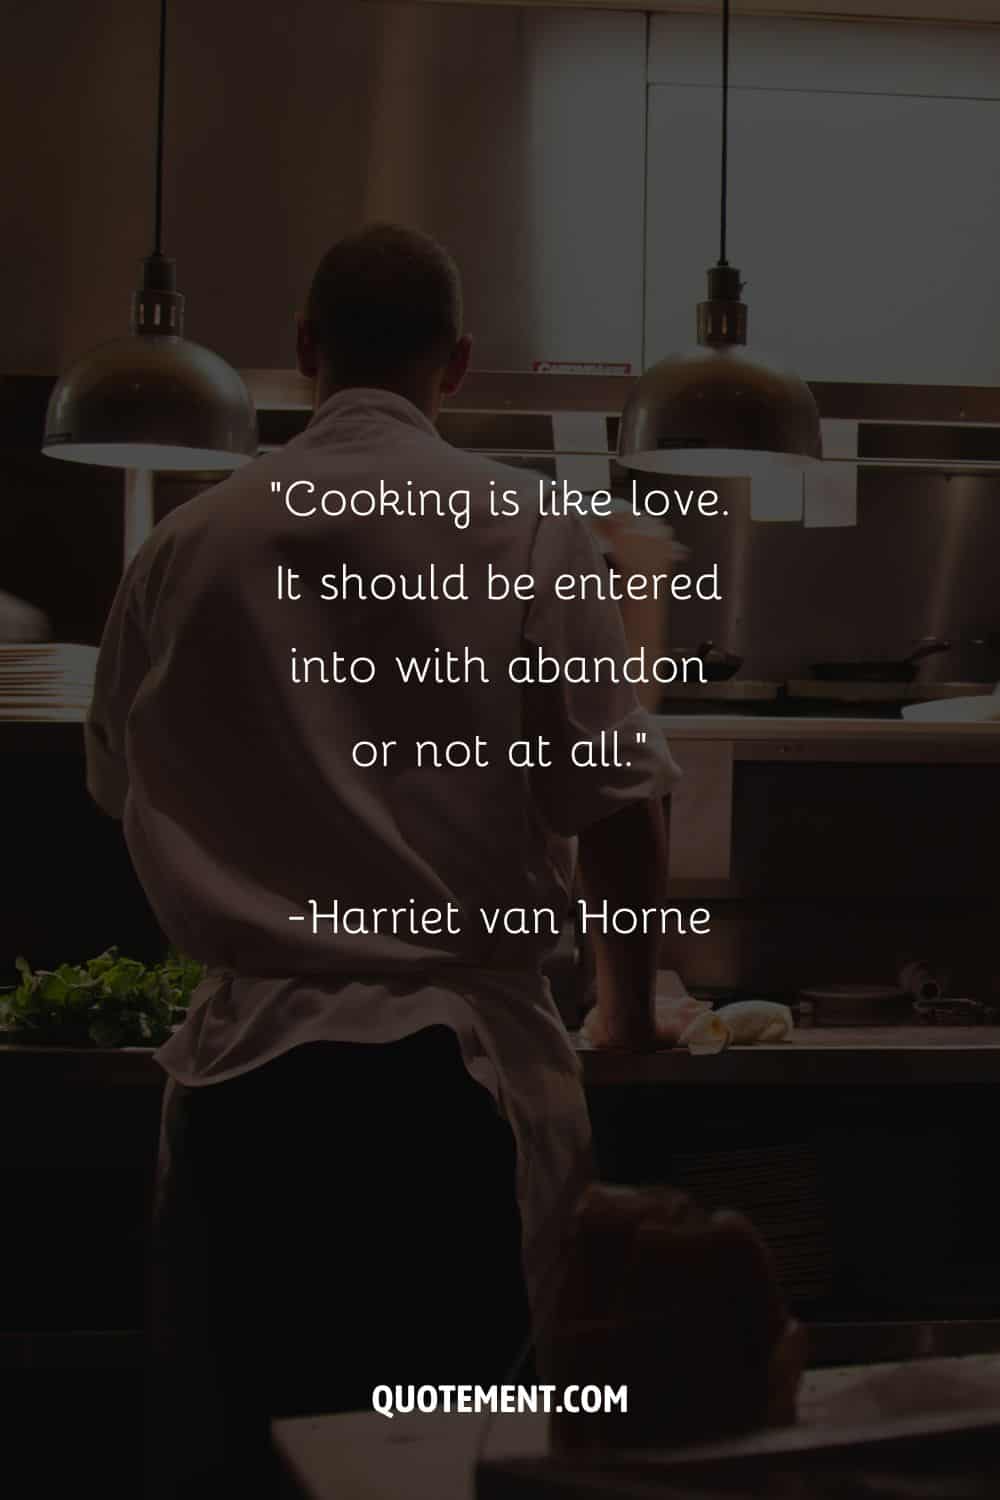 Chef en la cocina imagen que representa una cita sobre la cocina.